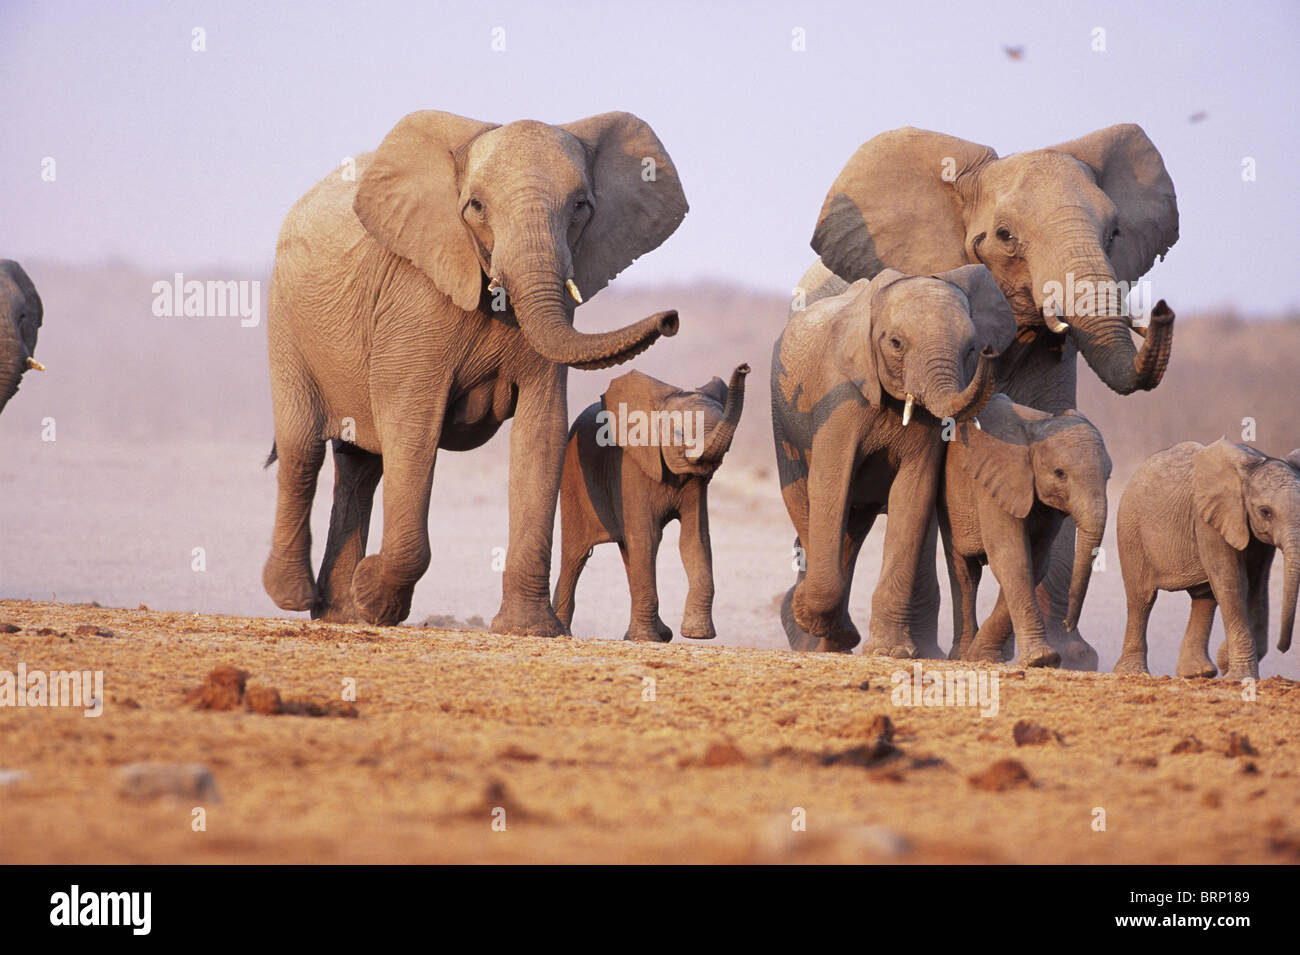 Ein afrikanischer Elefant-Familie unterwegs mit dem Rüssel angehoben, um die Luft zu schnuppern Stockfoto